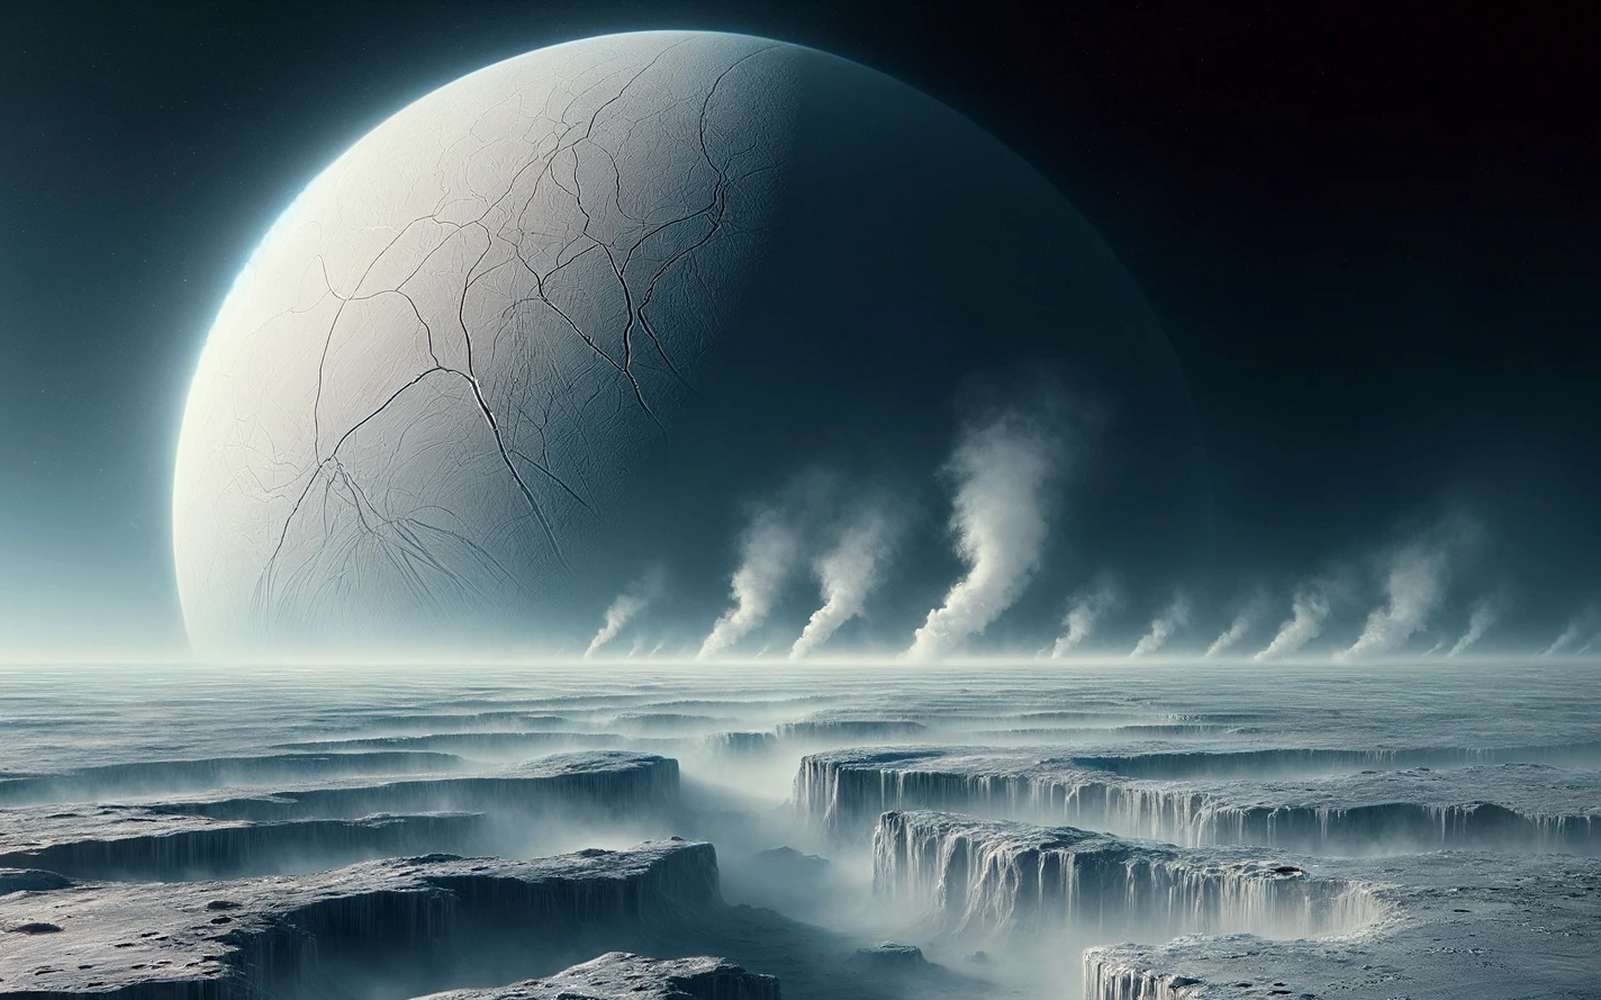 On sait pourquoi cette fascinante lune de Saturne crache des panaches de glace